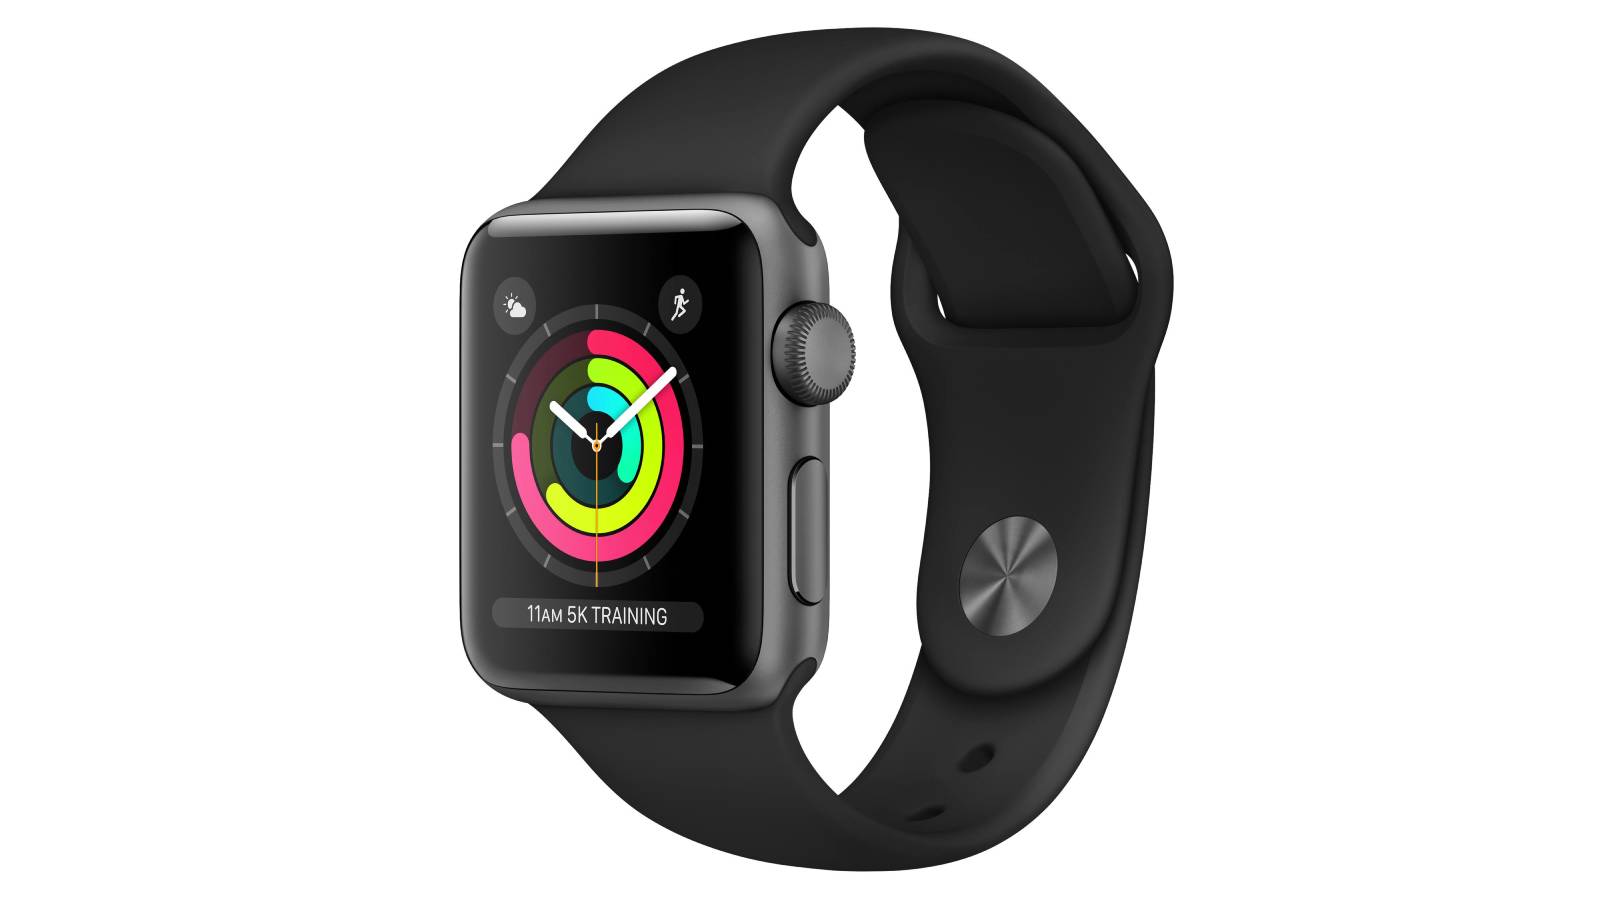 Vous avez une Apple Watch 3 ? Il faudra la restaurer complètement pour passer à iOS 14.6